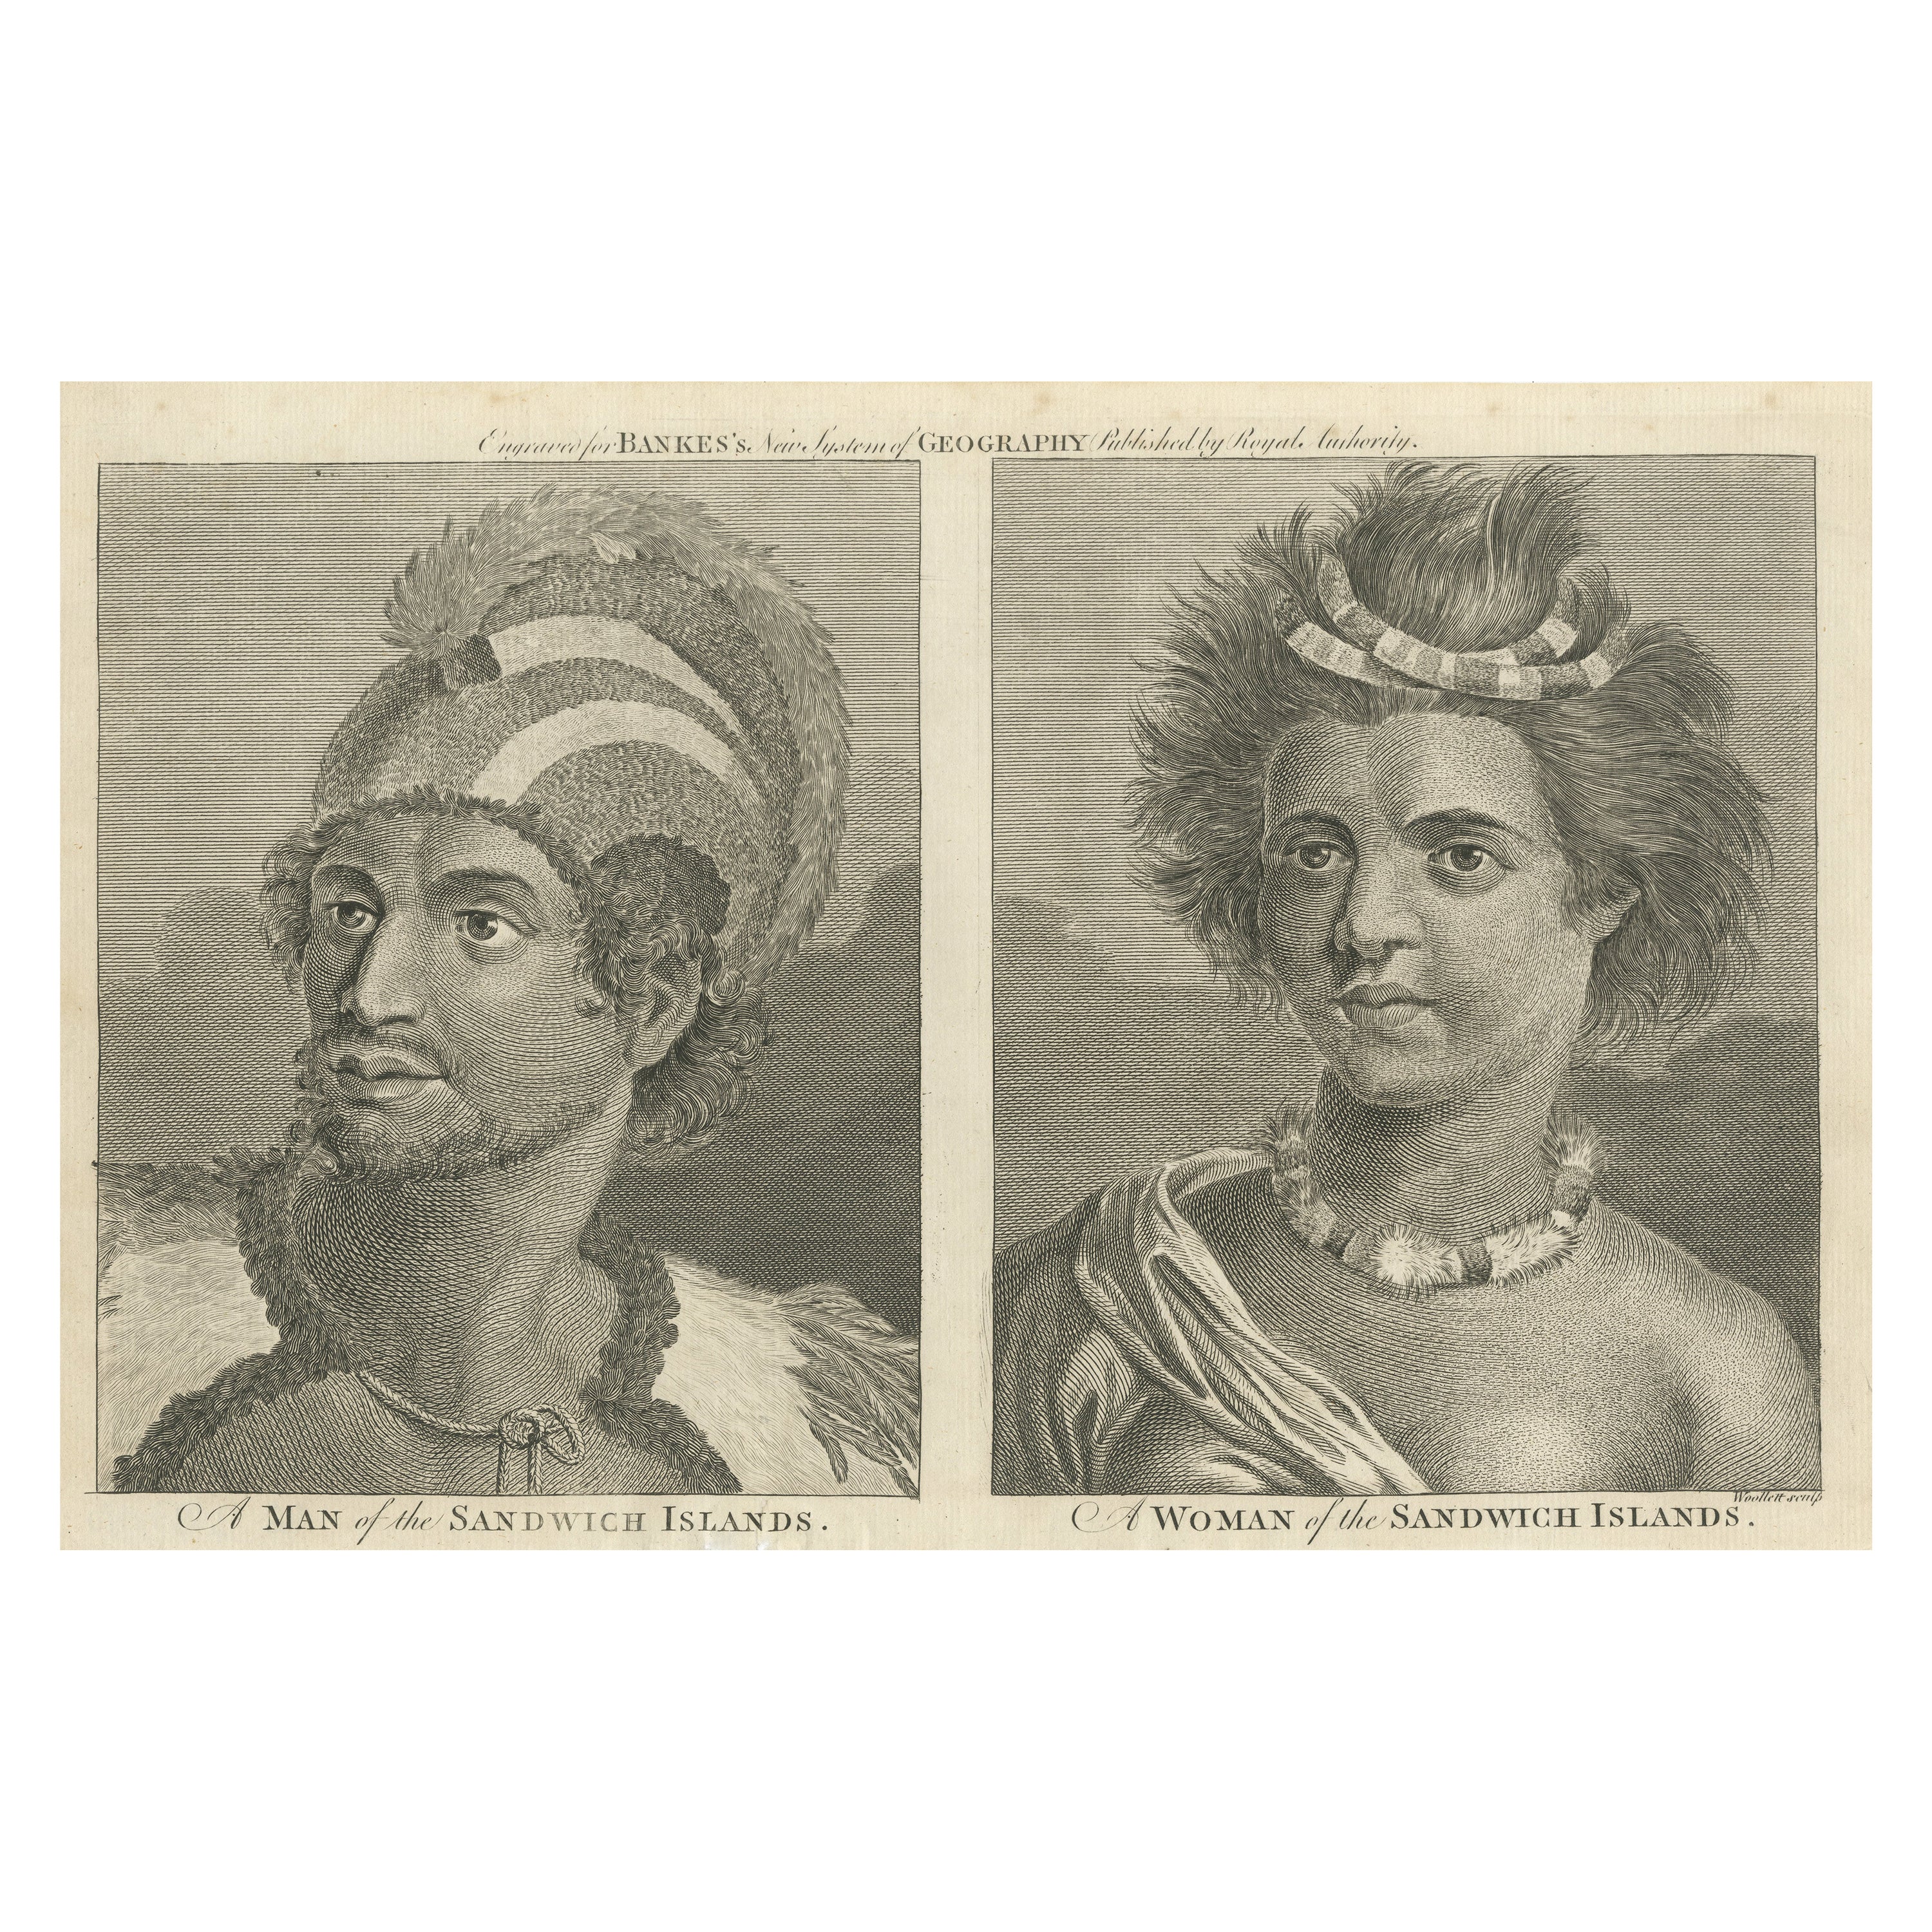 Porträts von Adeligen von den Sandwich-Inseln (Hawaii), veröffentlicht um 1790 im Angebot